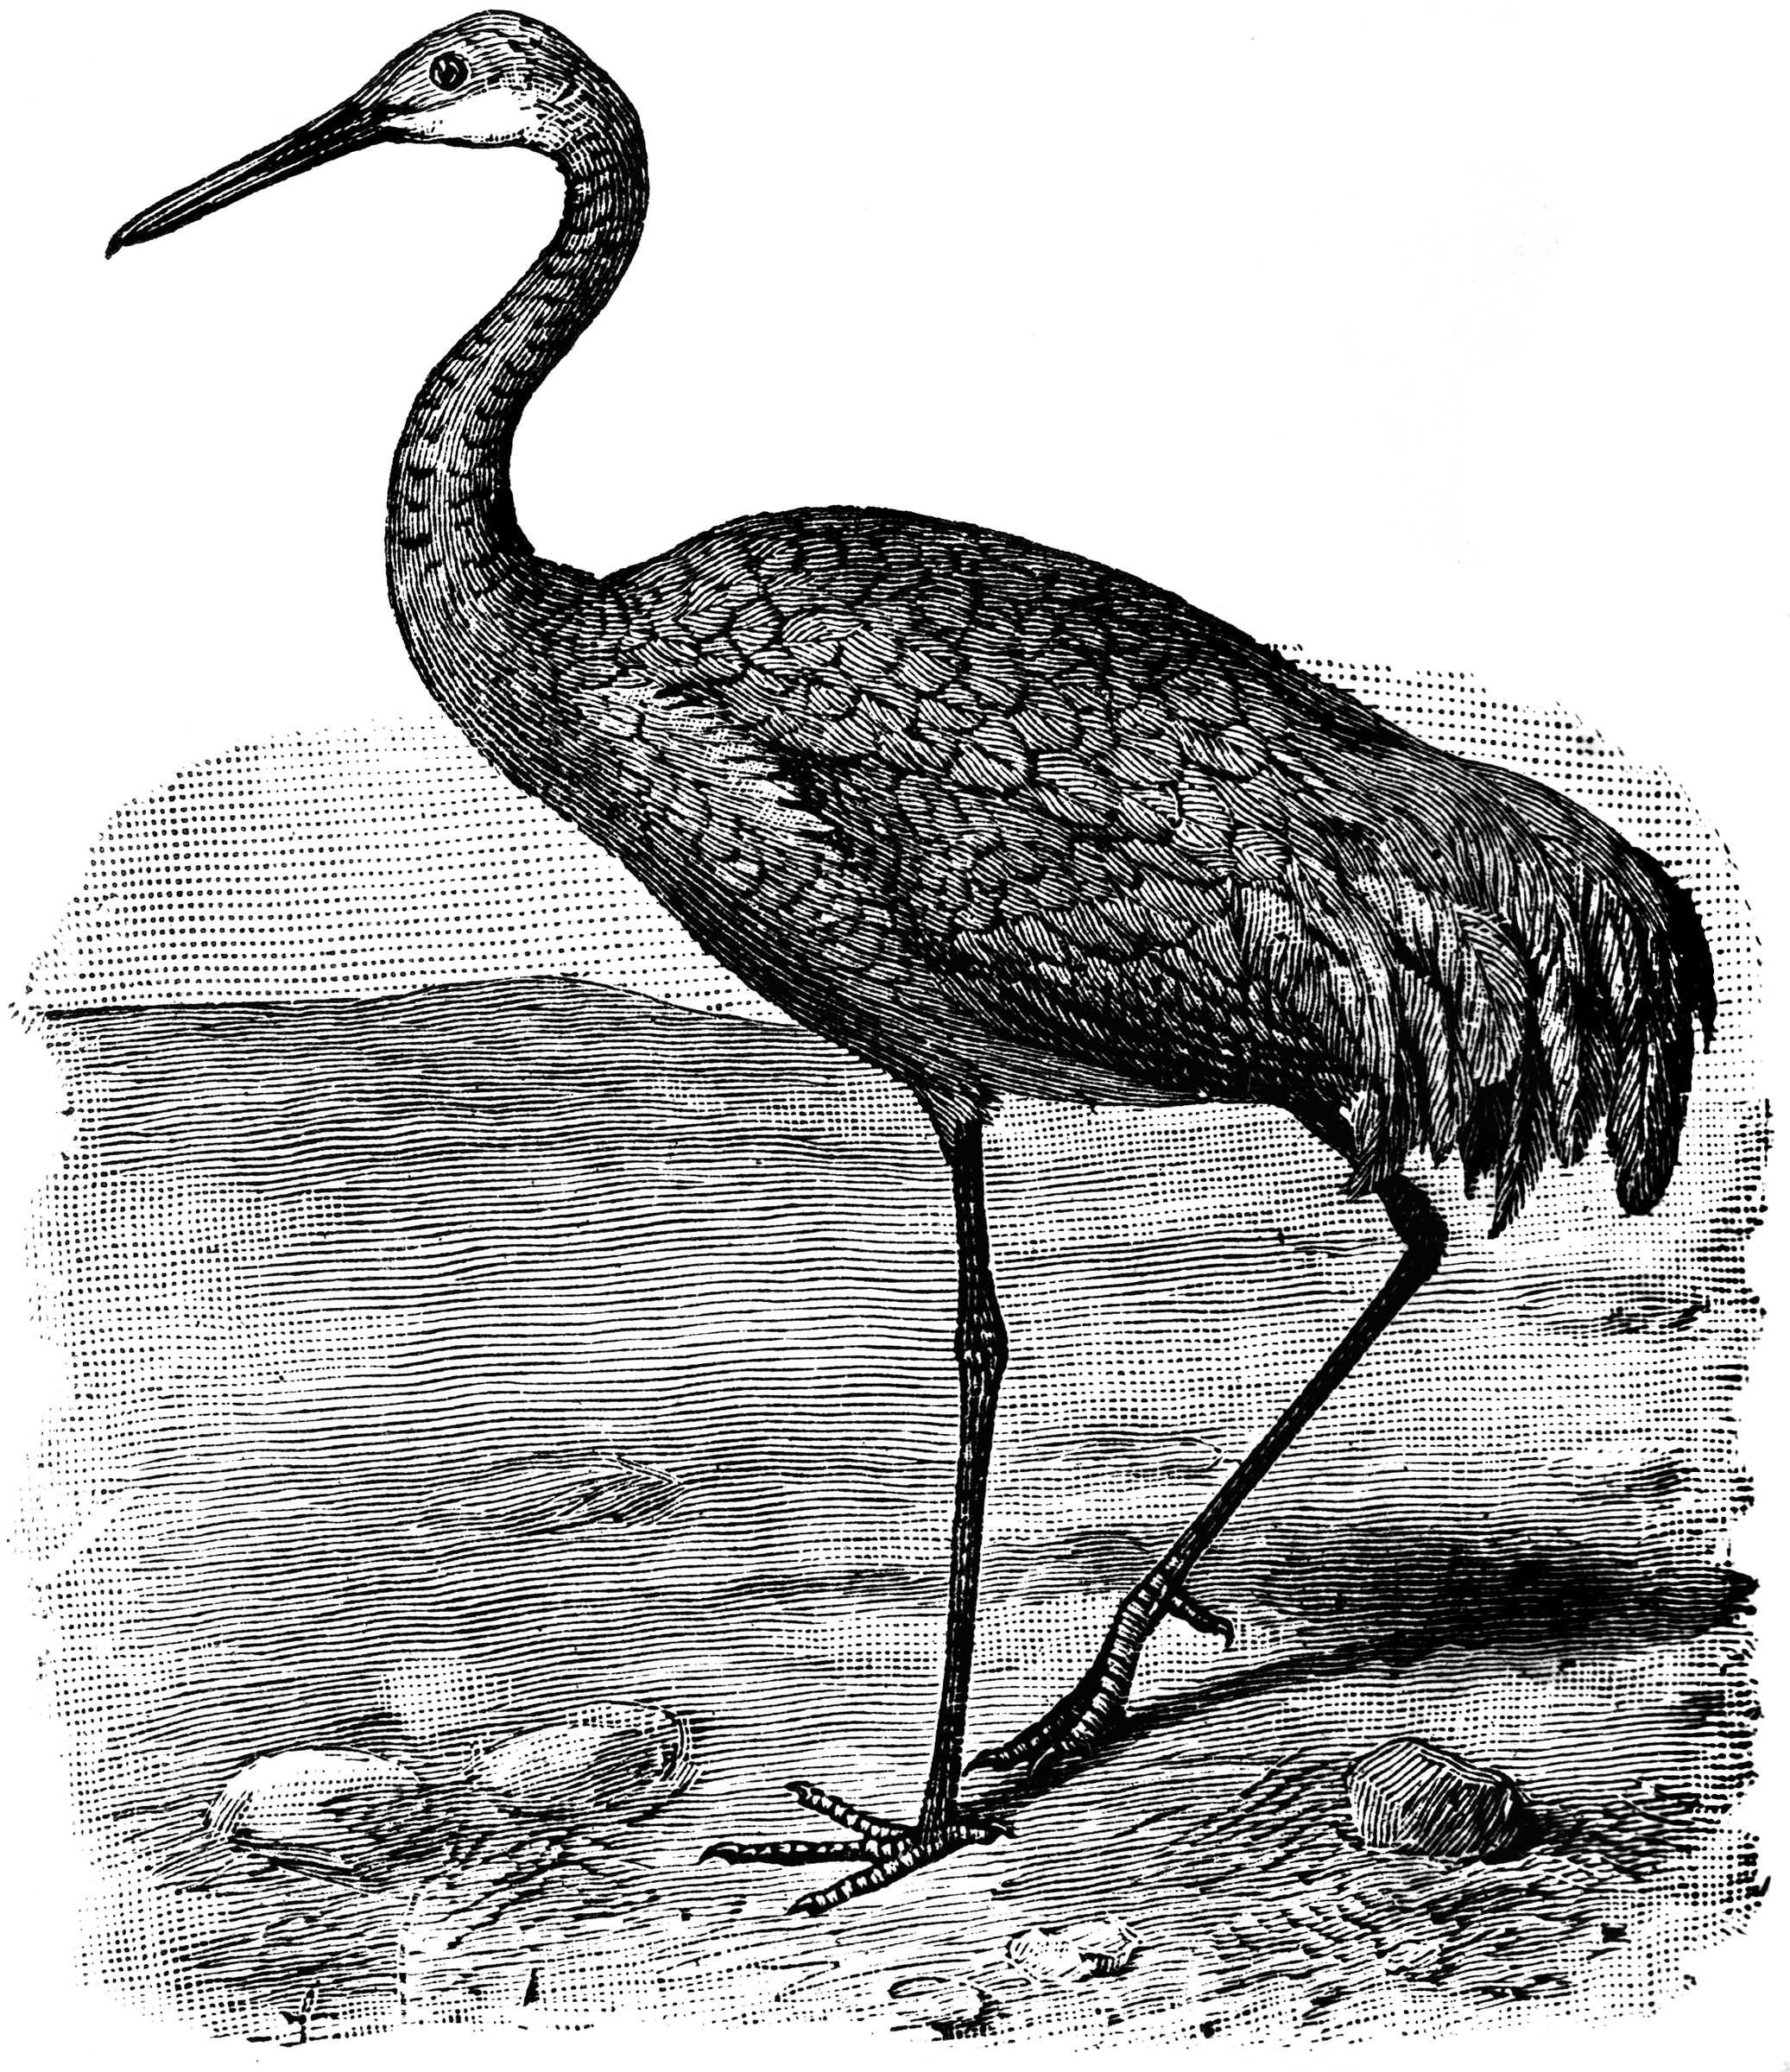 Crane engraving